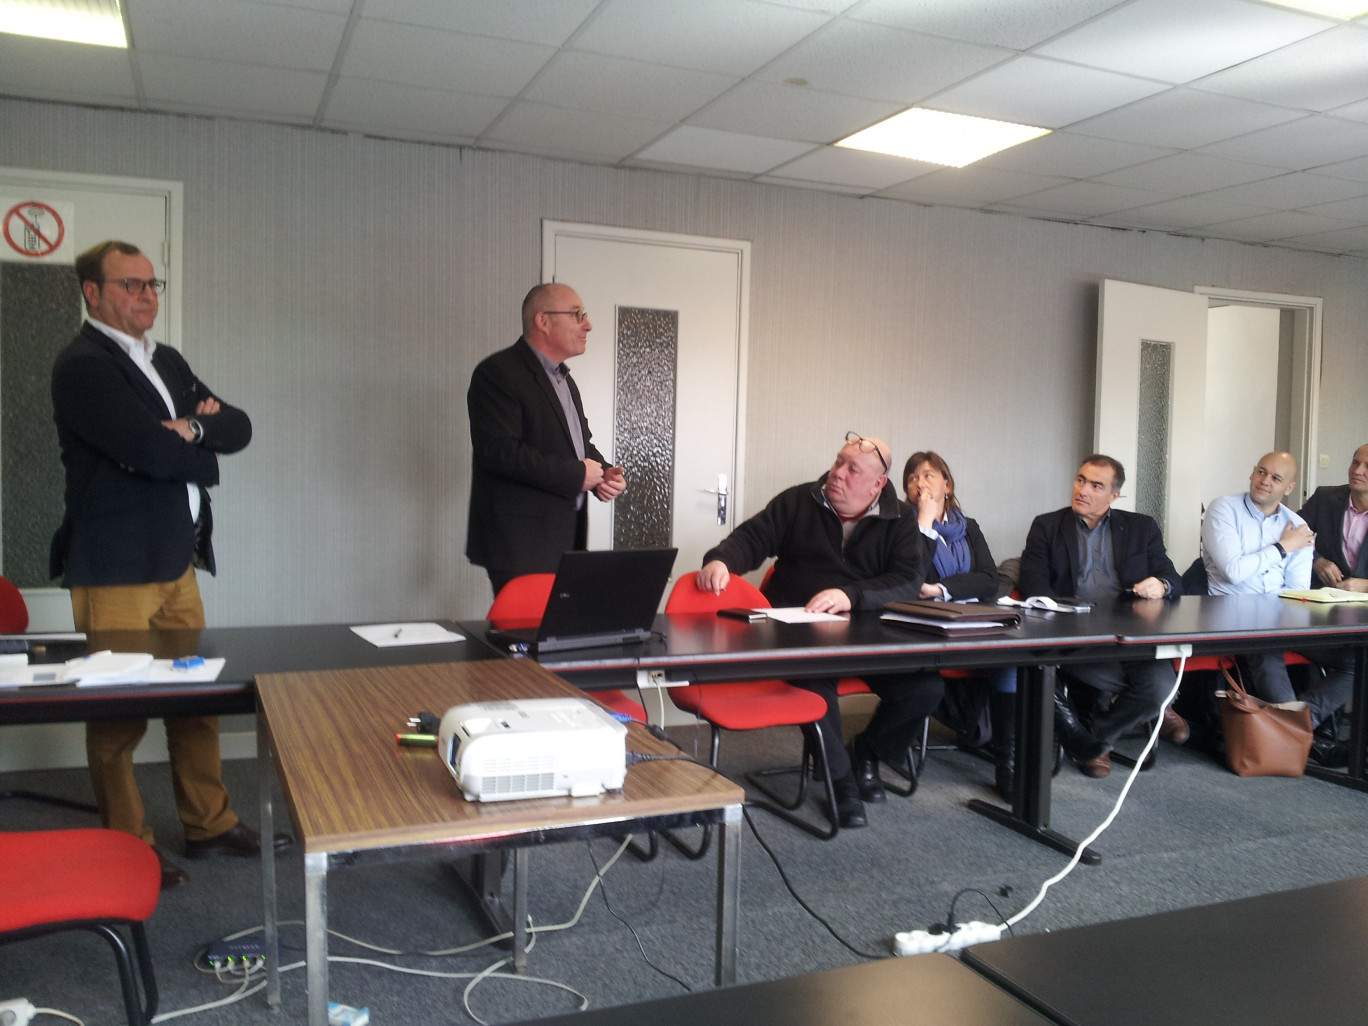 Dunkerque Promotion a organisé une rencontre au siège social de Bergues afin de mettre en contact les différents acteurs industriels, institutionnels, maritimes et ruraux du territoire.